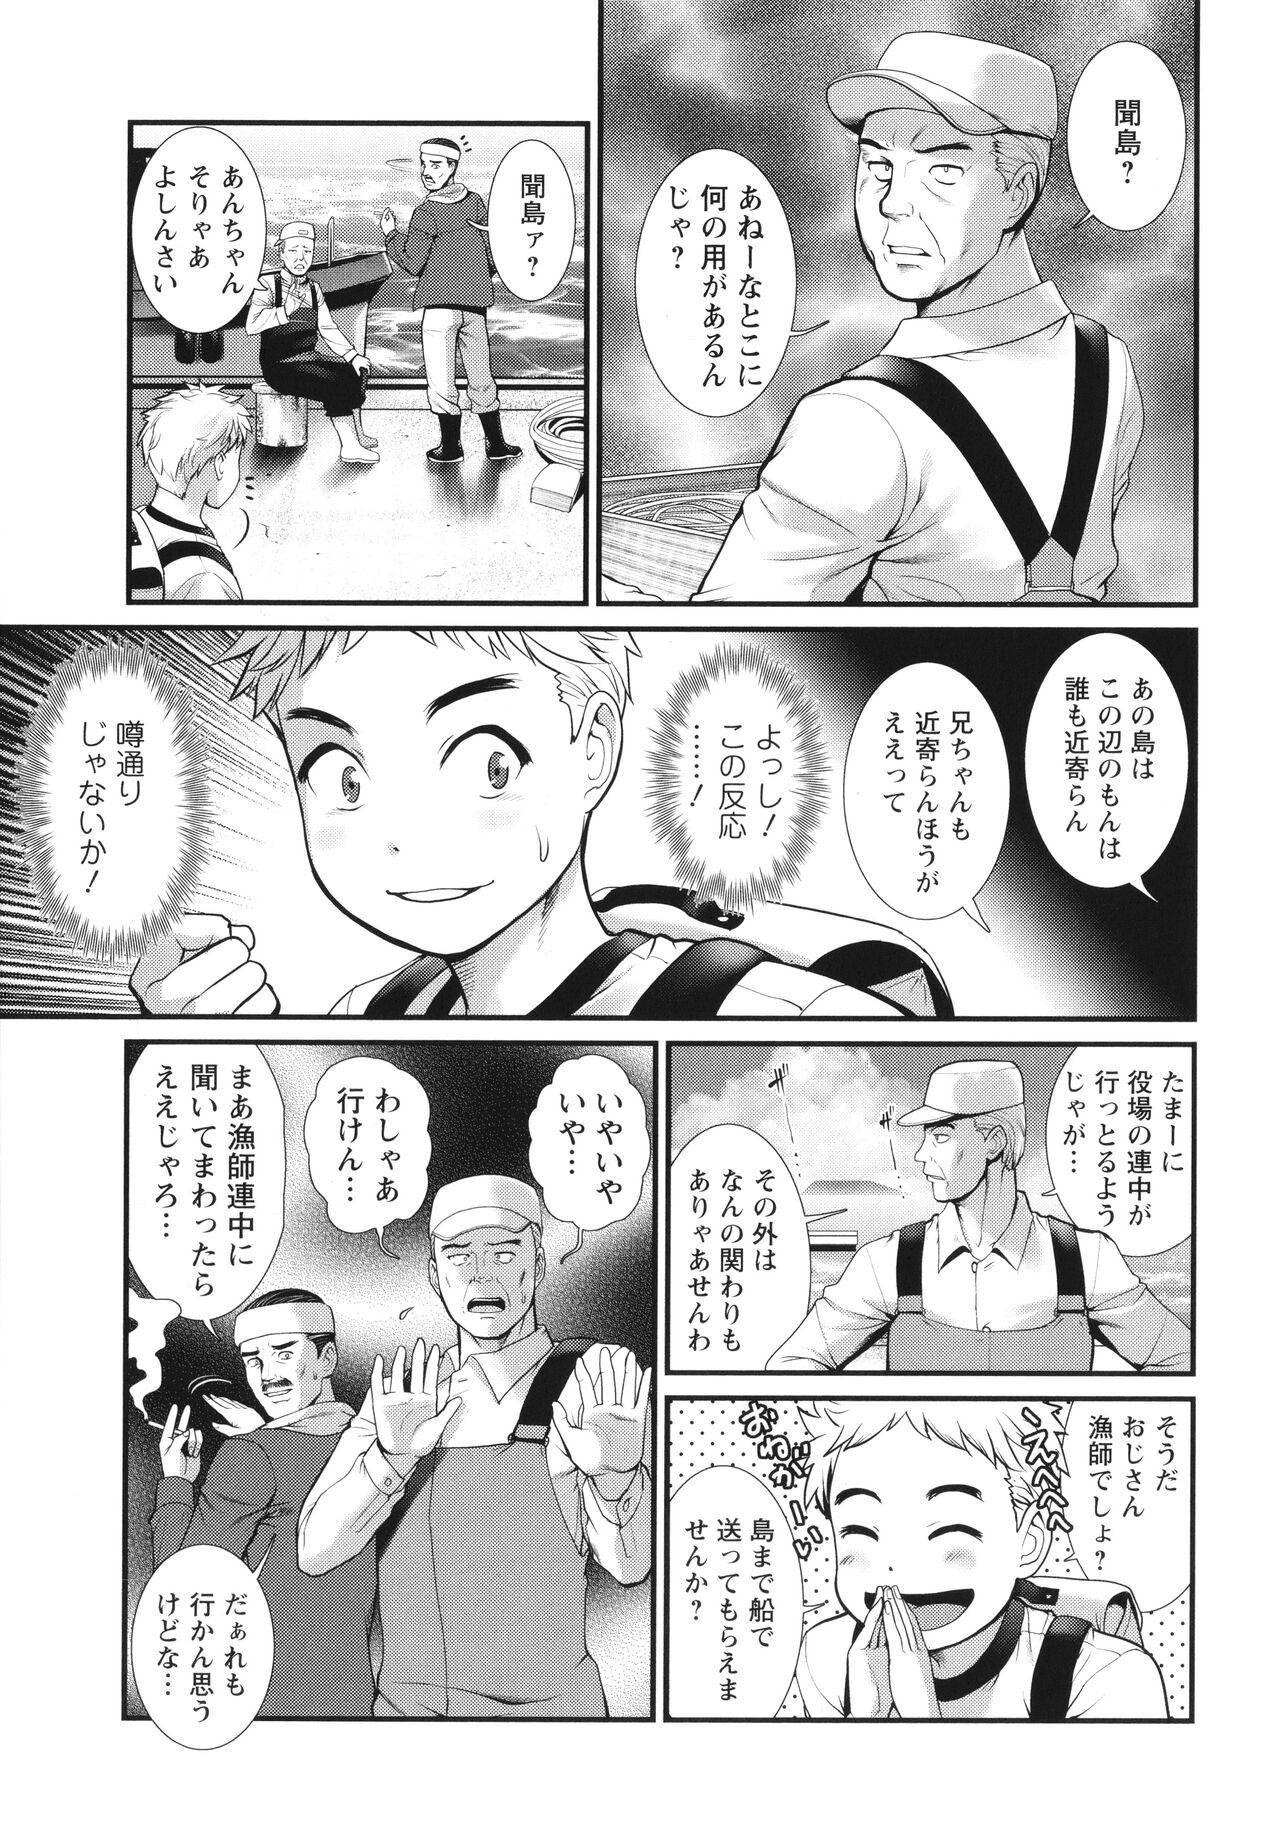 Chaturbate Meshibe no Sakihokoru Shima de Small - Page 12